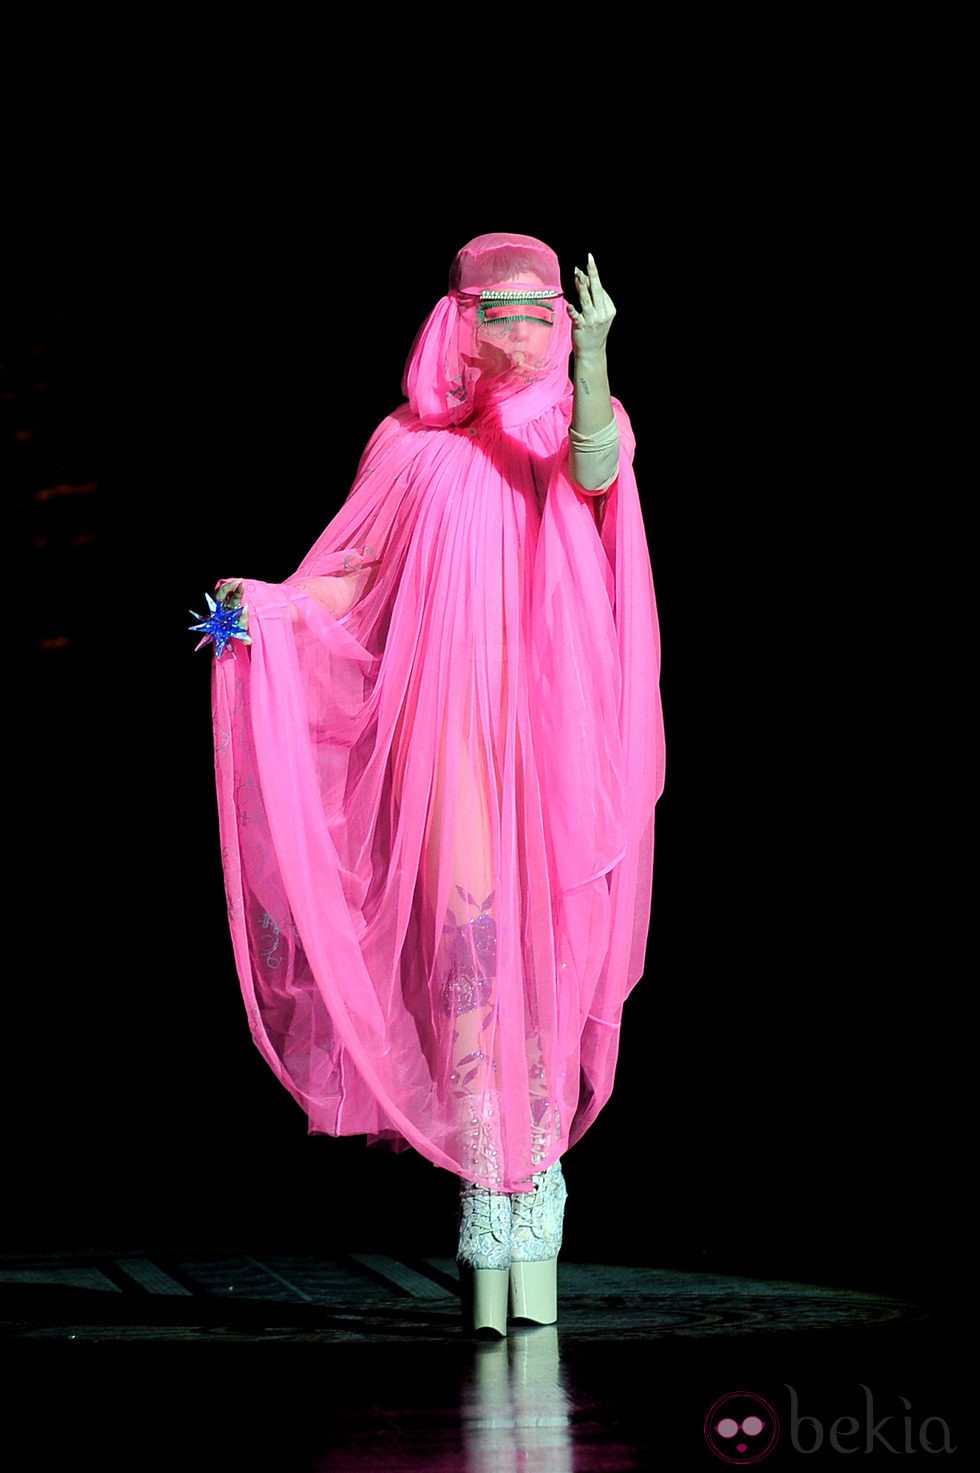 Lady Gaga desfila para Philip Treacy en la Semana de la Moda de Londres primavera/verano 2013